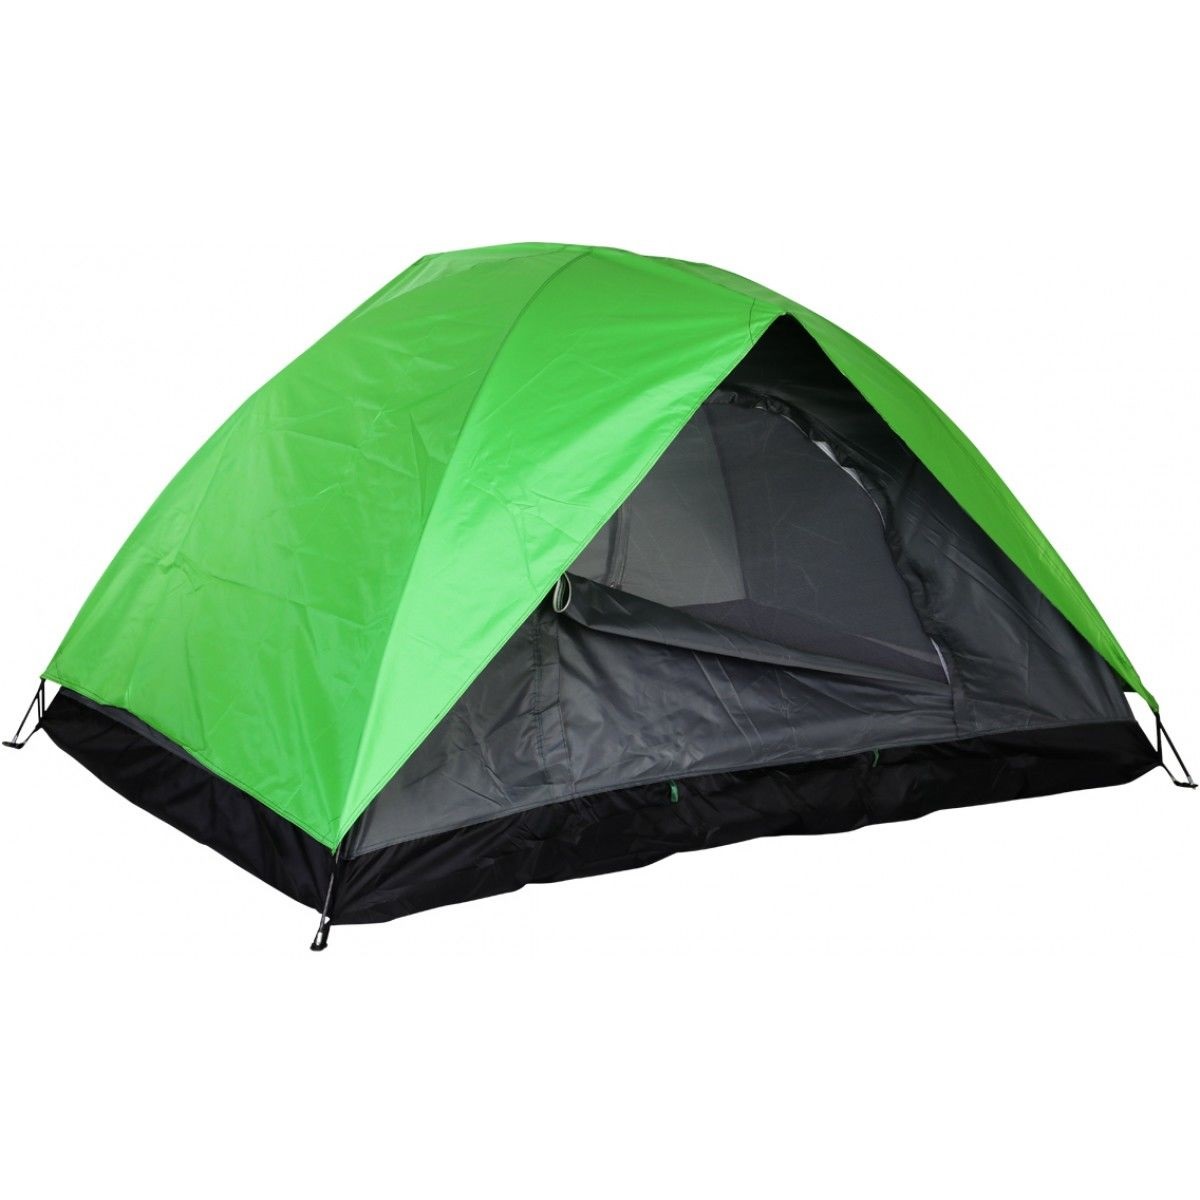 Палатка Тонар Travel, кемпинговая, 2 места, зеленый/черный